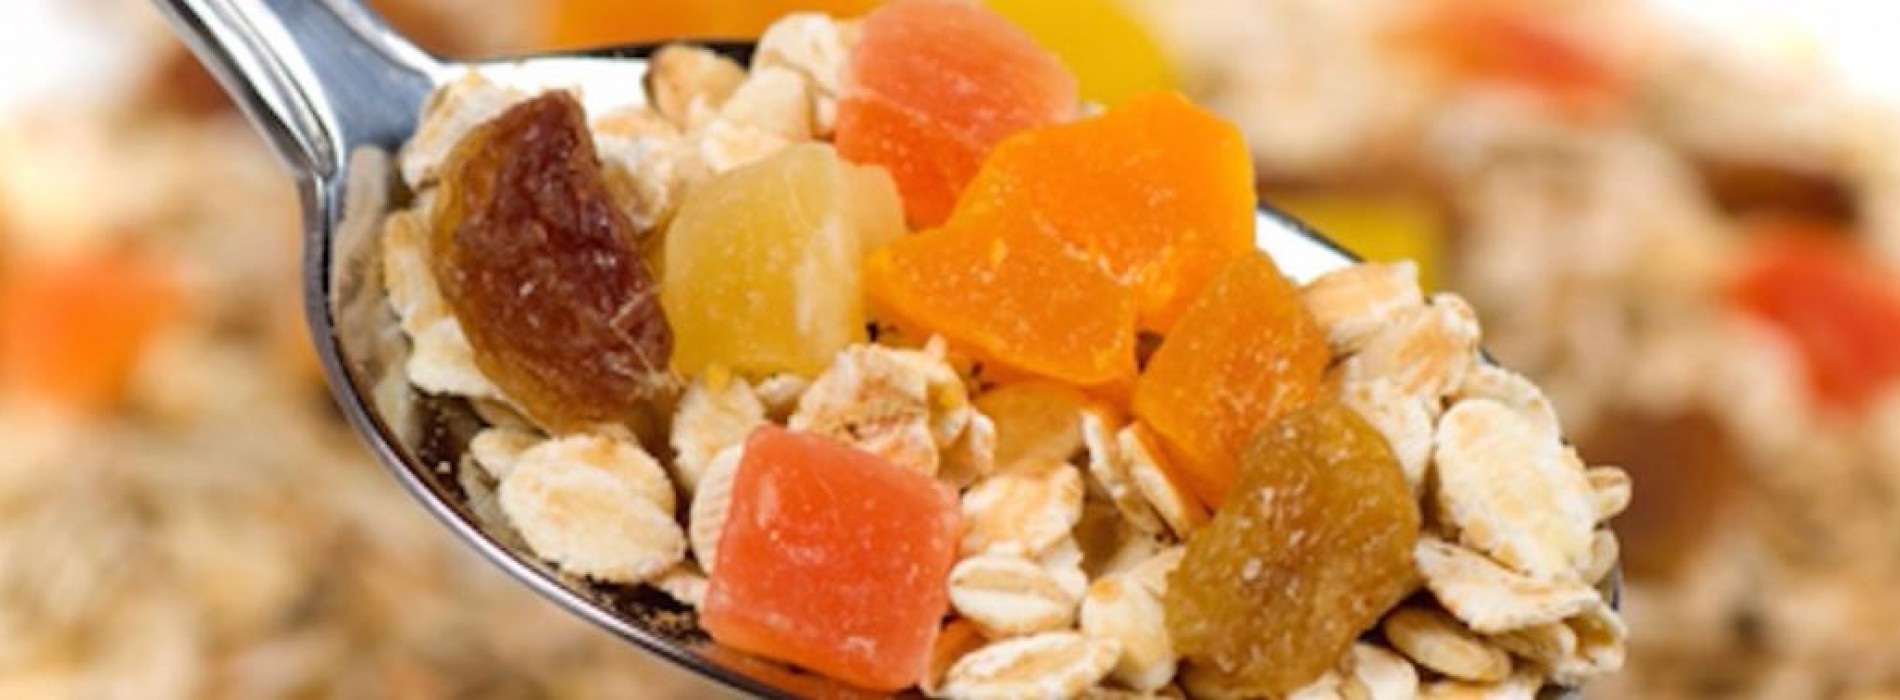 Gedroogd fruit – Past dit fruit in een gezond eetpatroon?